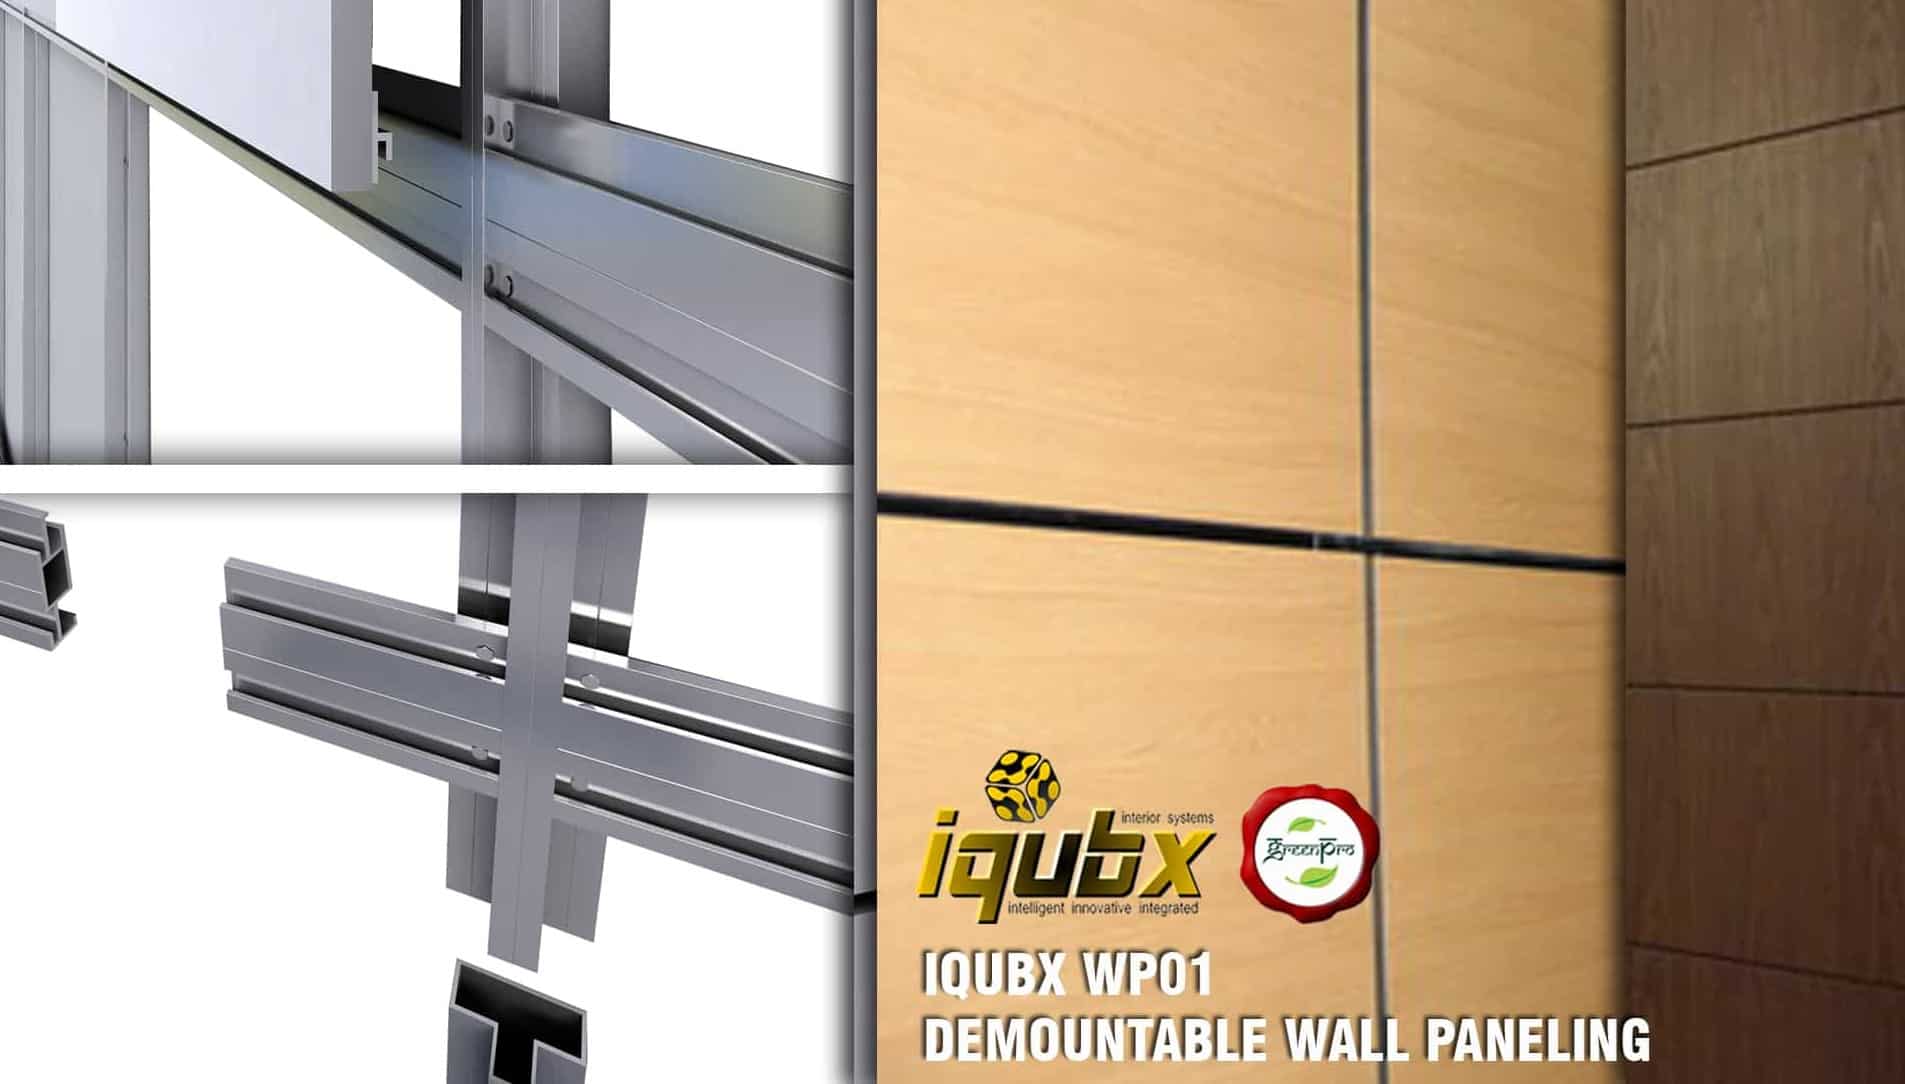 iqubx wp01 paneling cladding system